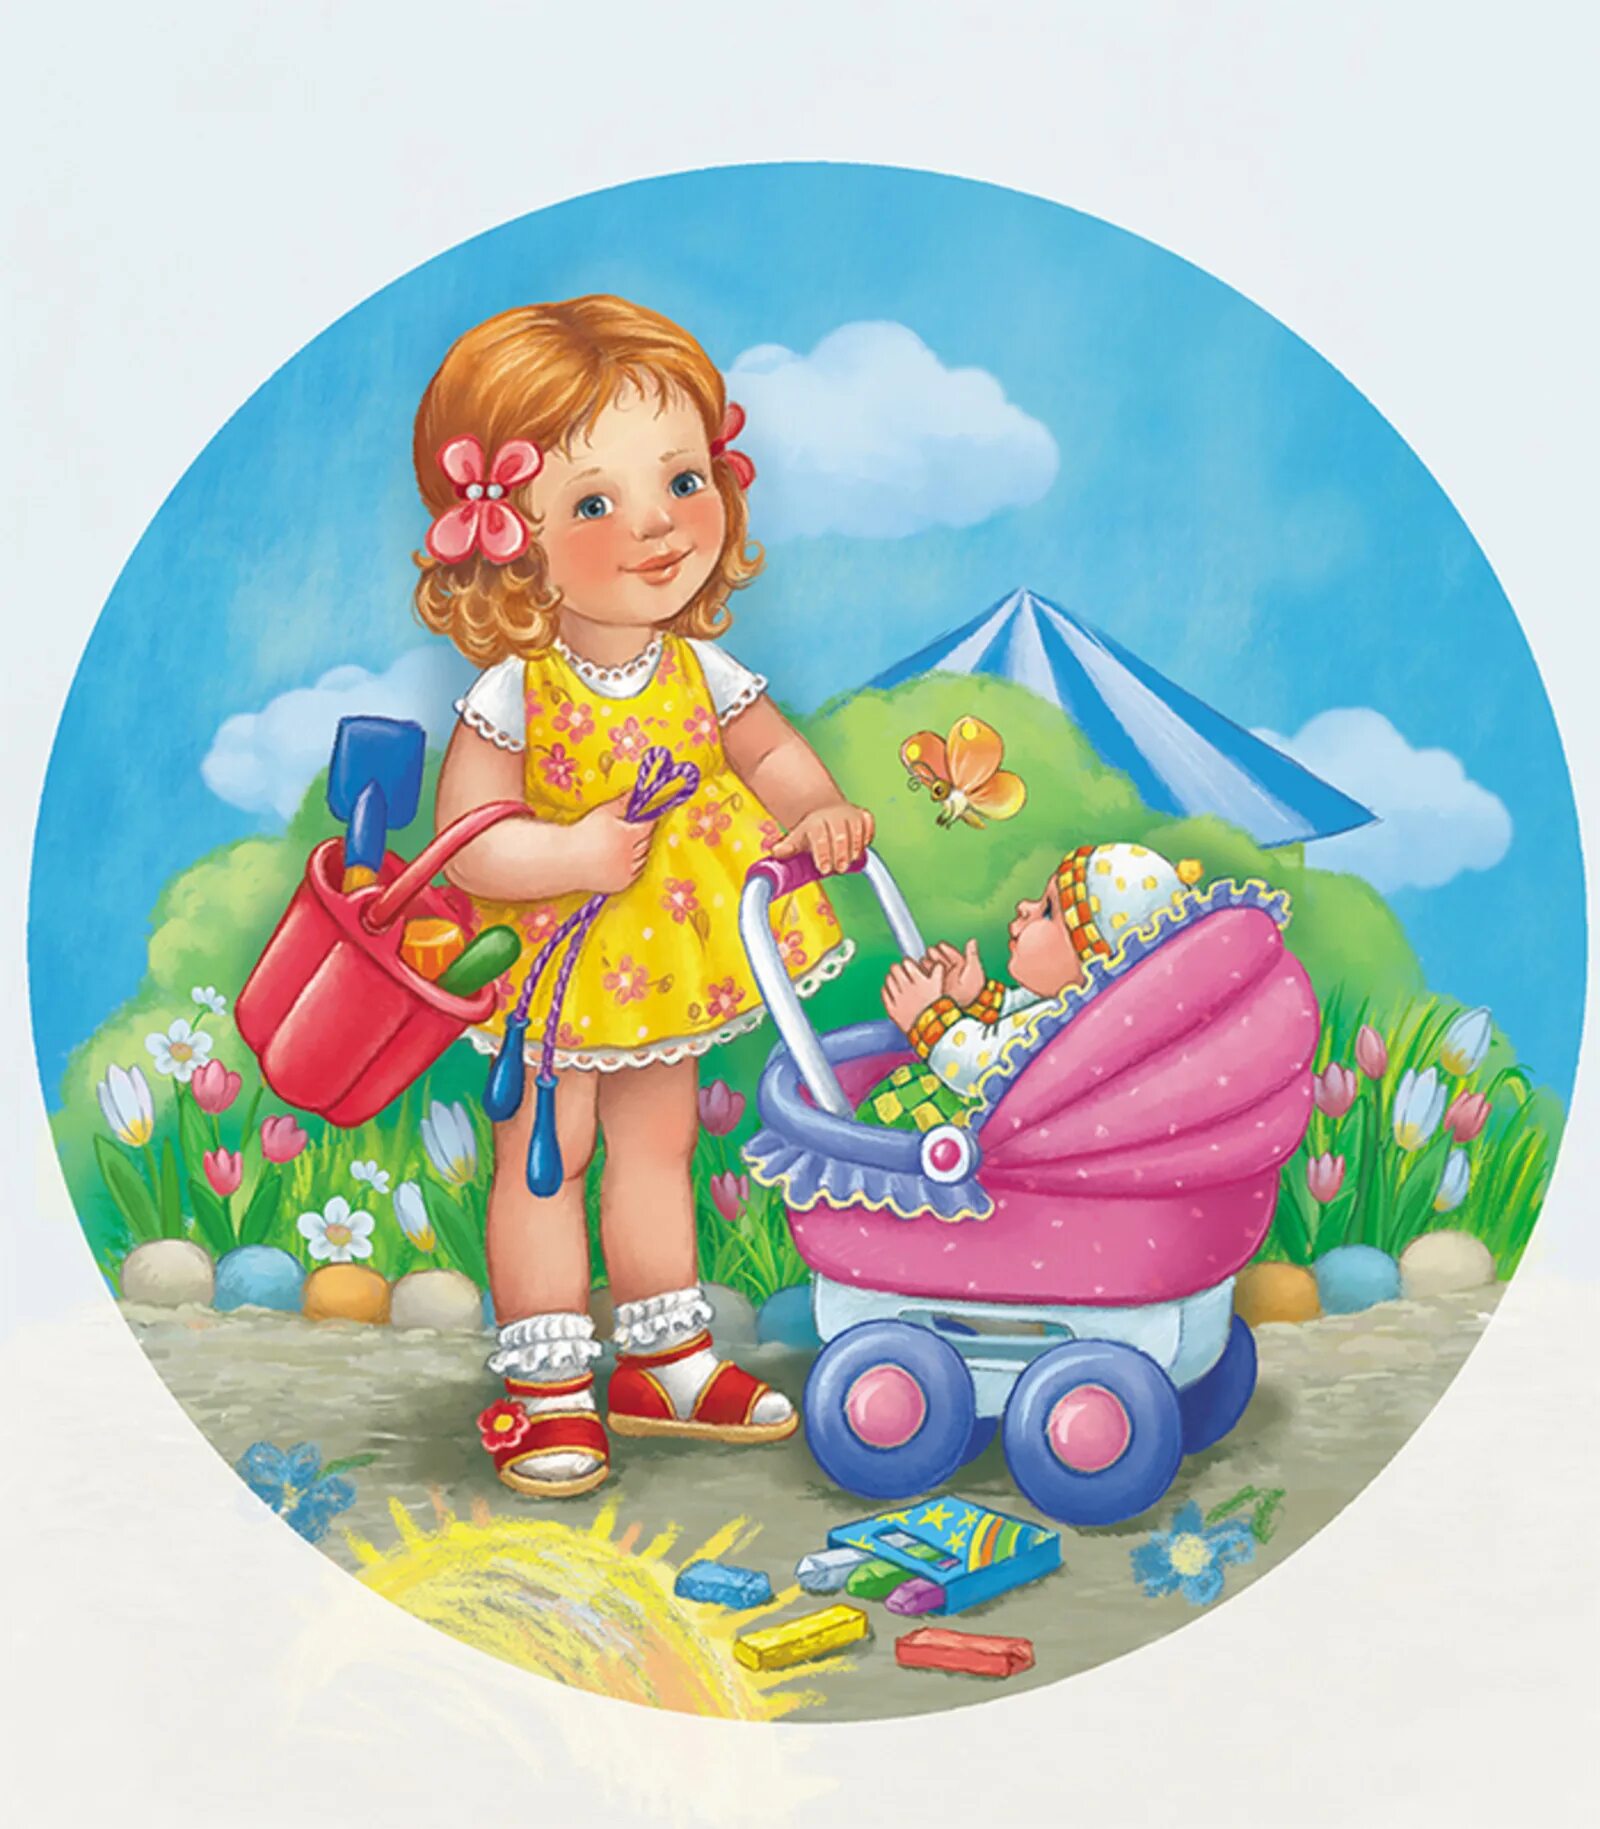 Игрушки для детского сада. Иллюстрации игрушек для детей в ДОУ. Дети иллюстрация. Девочка везет куклу в коляске. Картинка девочка с куклой